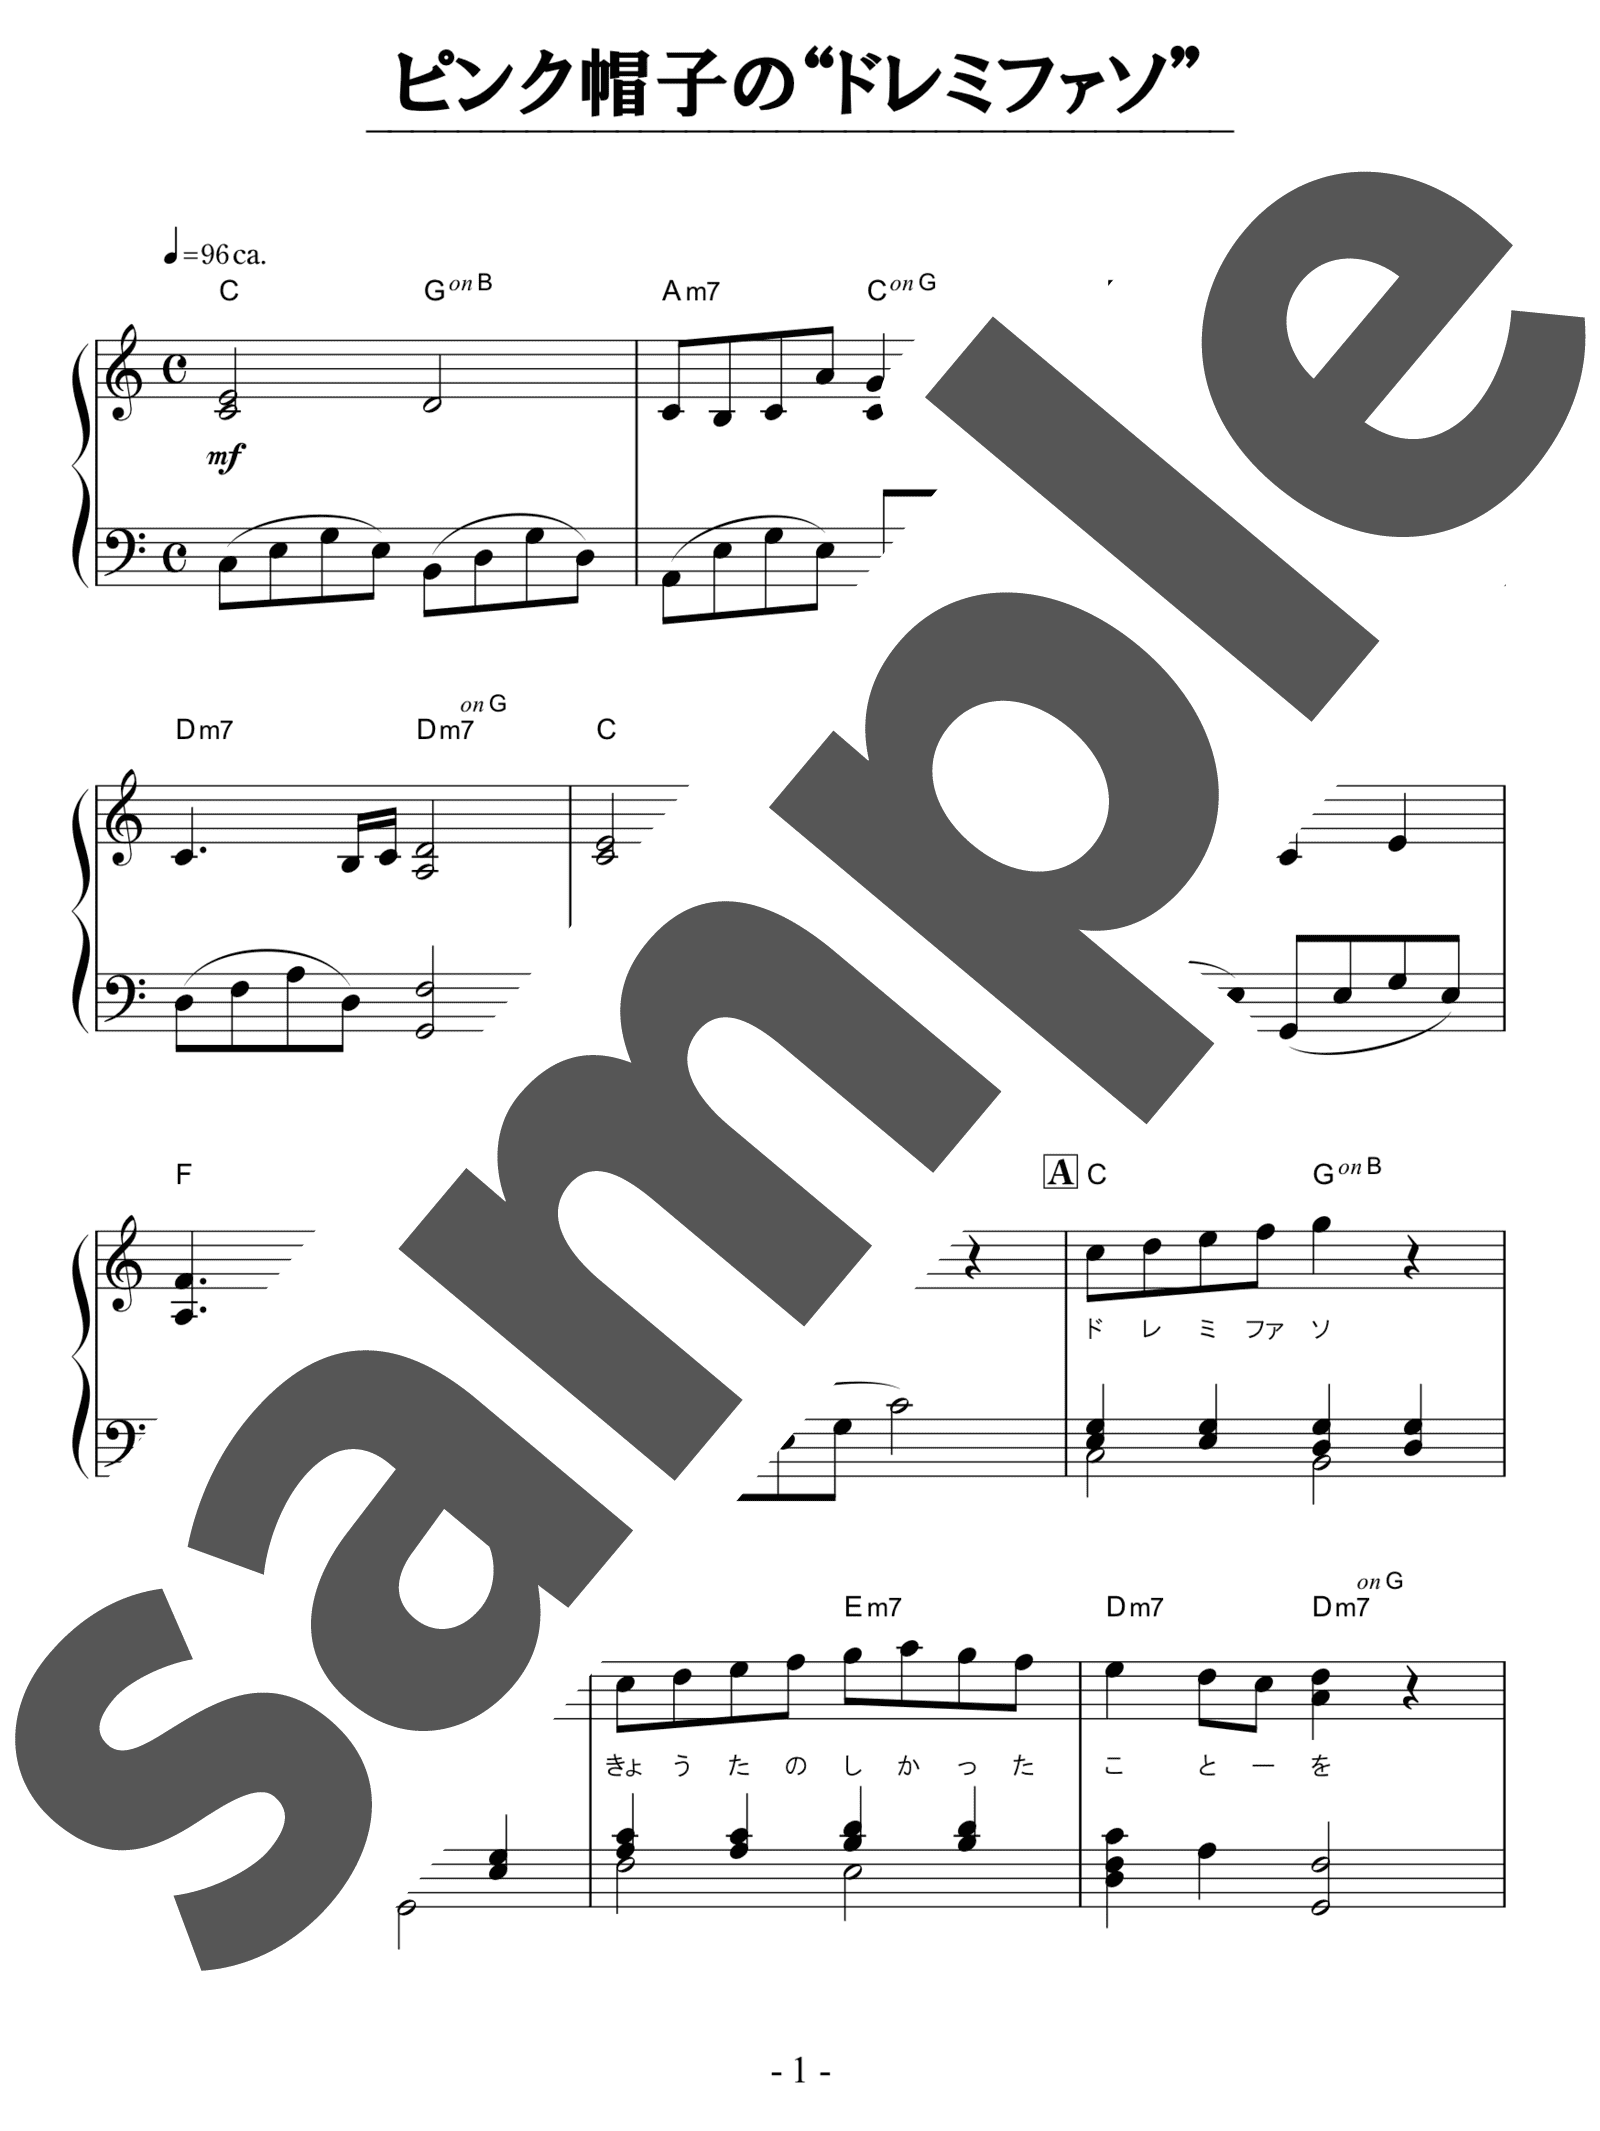 「ピンク帽子の“ドレミファソ” / MINMI」（初中級・ピアノ）のサンプル楽譜